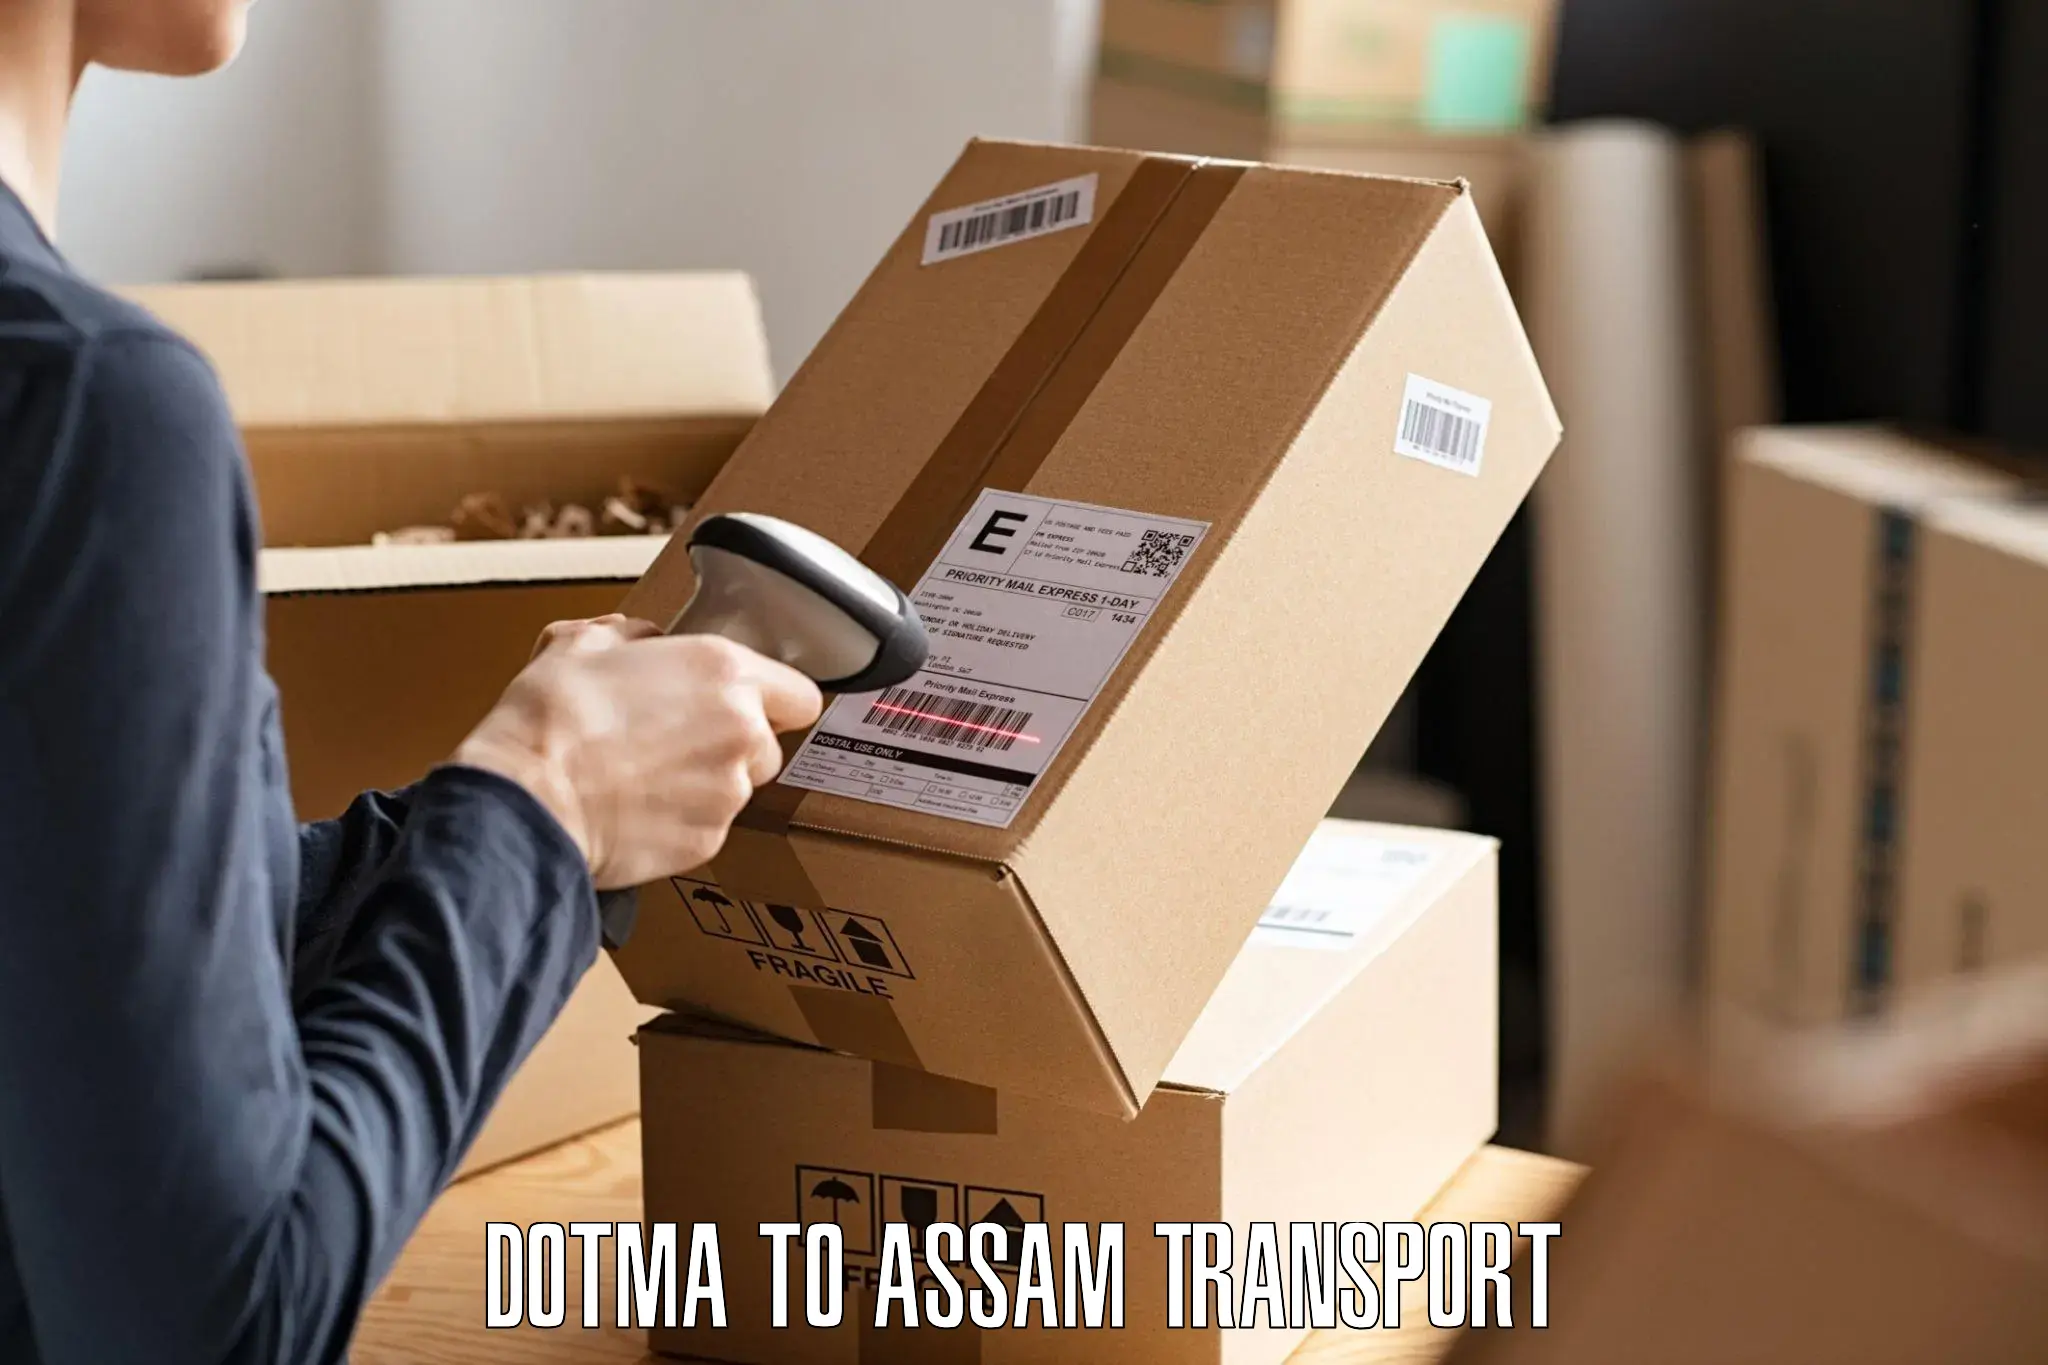 Nearest transport service Dotma to Assam